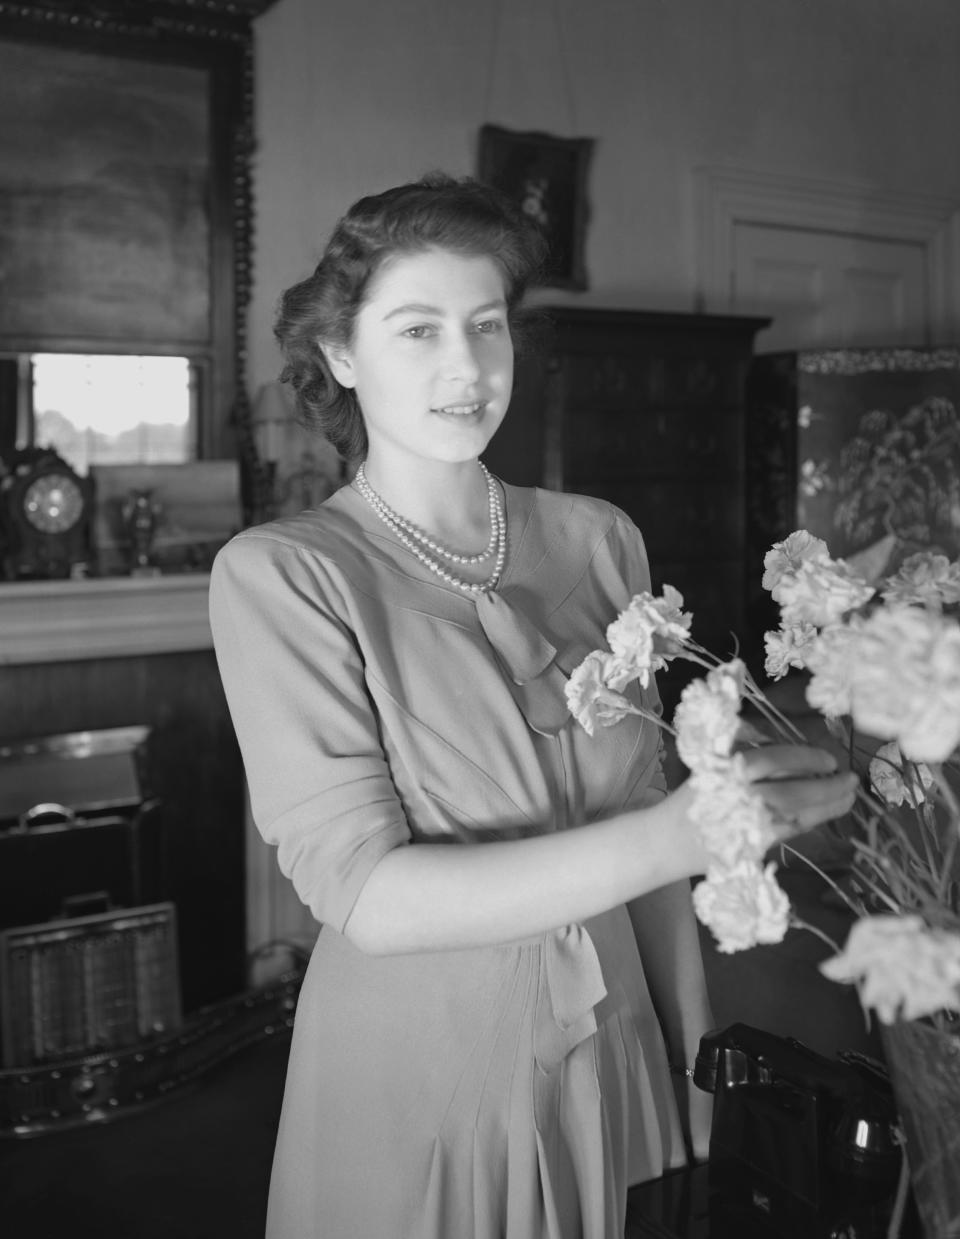 Cuando aún era Princesa, Isabel en Windsor Castle, Berkshire, el 8 de julio de 1946. (Photo by Lisa Sheridan/Studio Lisa/Getty Images).